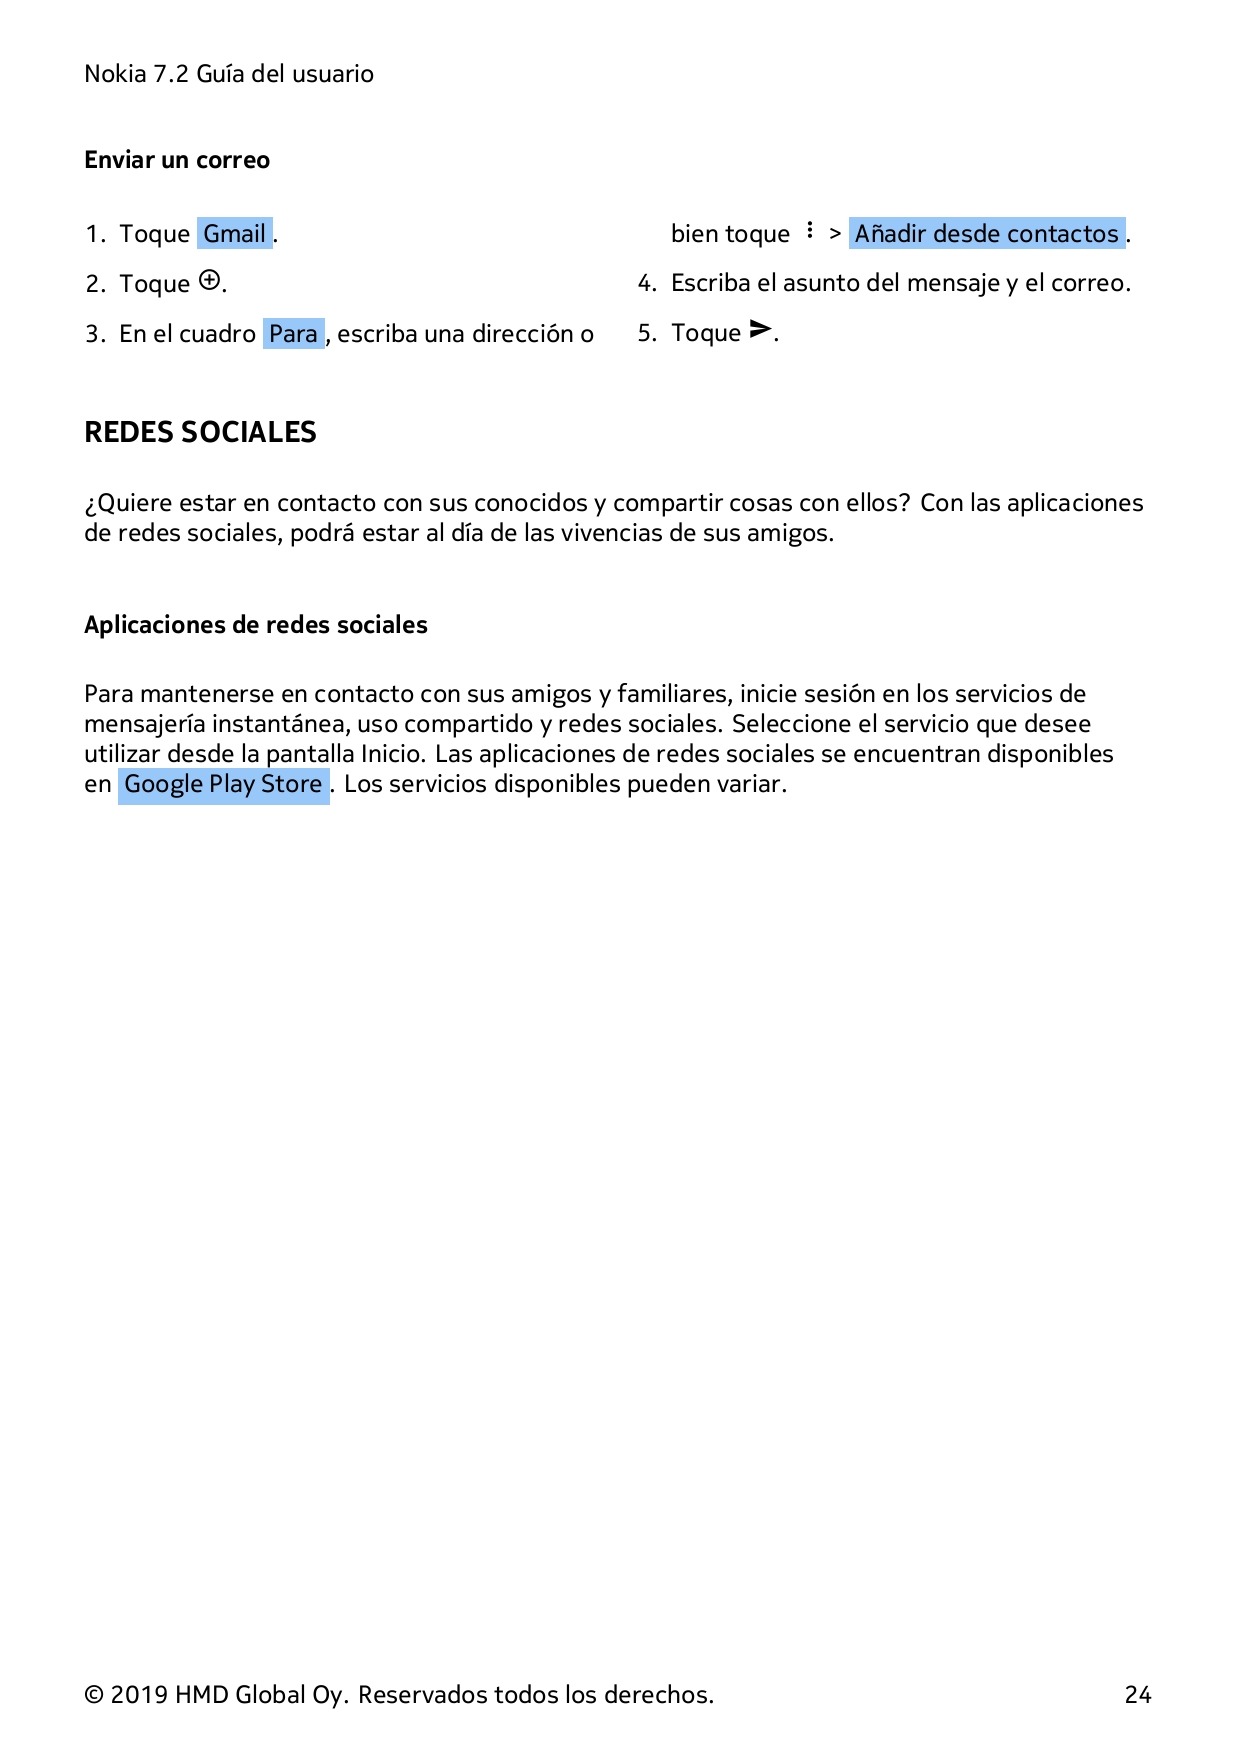 Nokia 7.2 Guía del usuarioEnviar un correo1. Toque Gmail .bien toque � > Añadir desde contactos .2. Toque �.4. Escriba el asunto